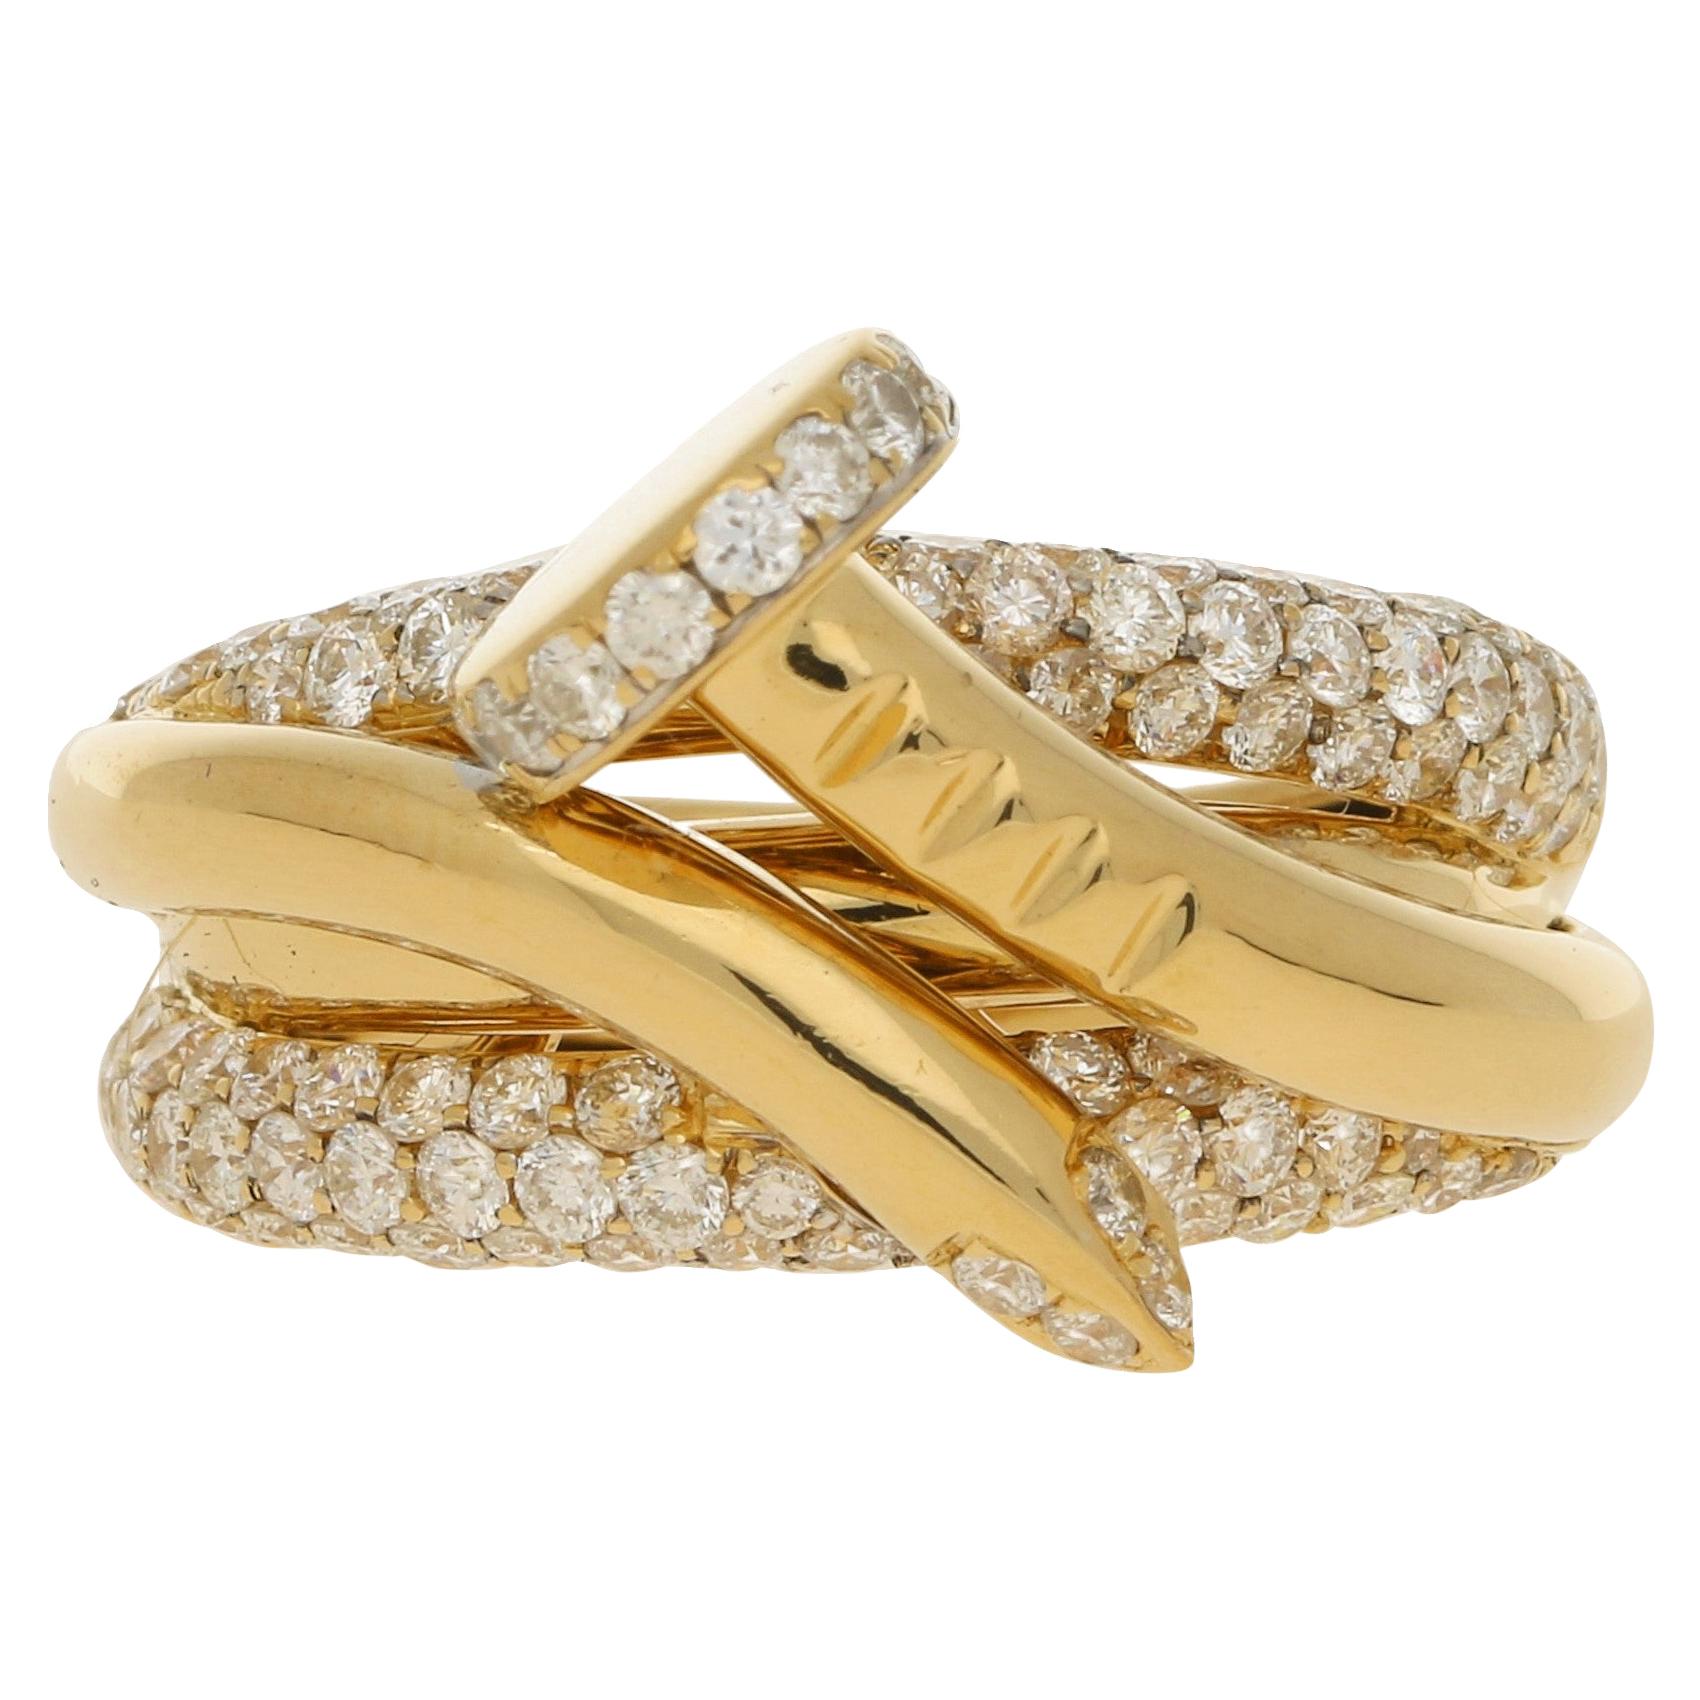 Pave Set Diamond Nail Ring in 18 Carat Yellow Gold 1.97 Carat